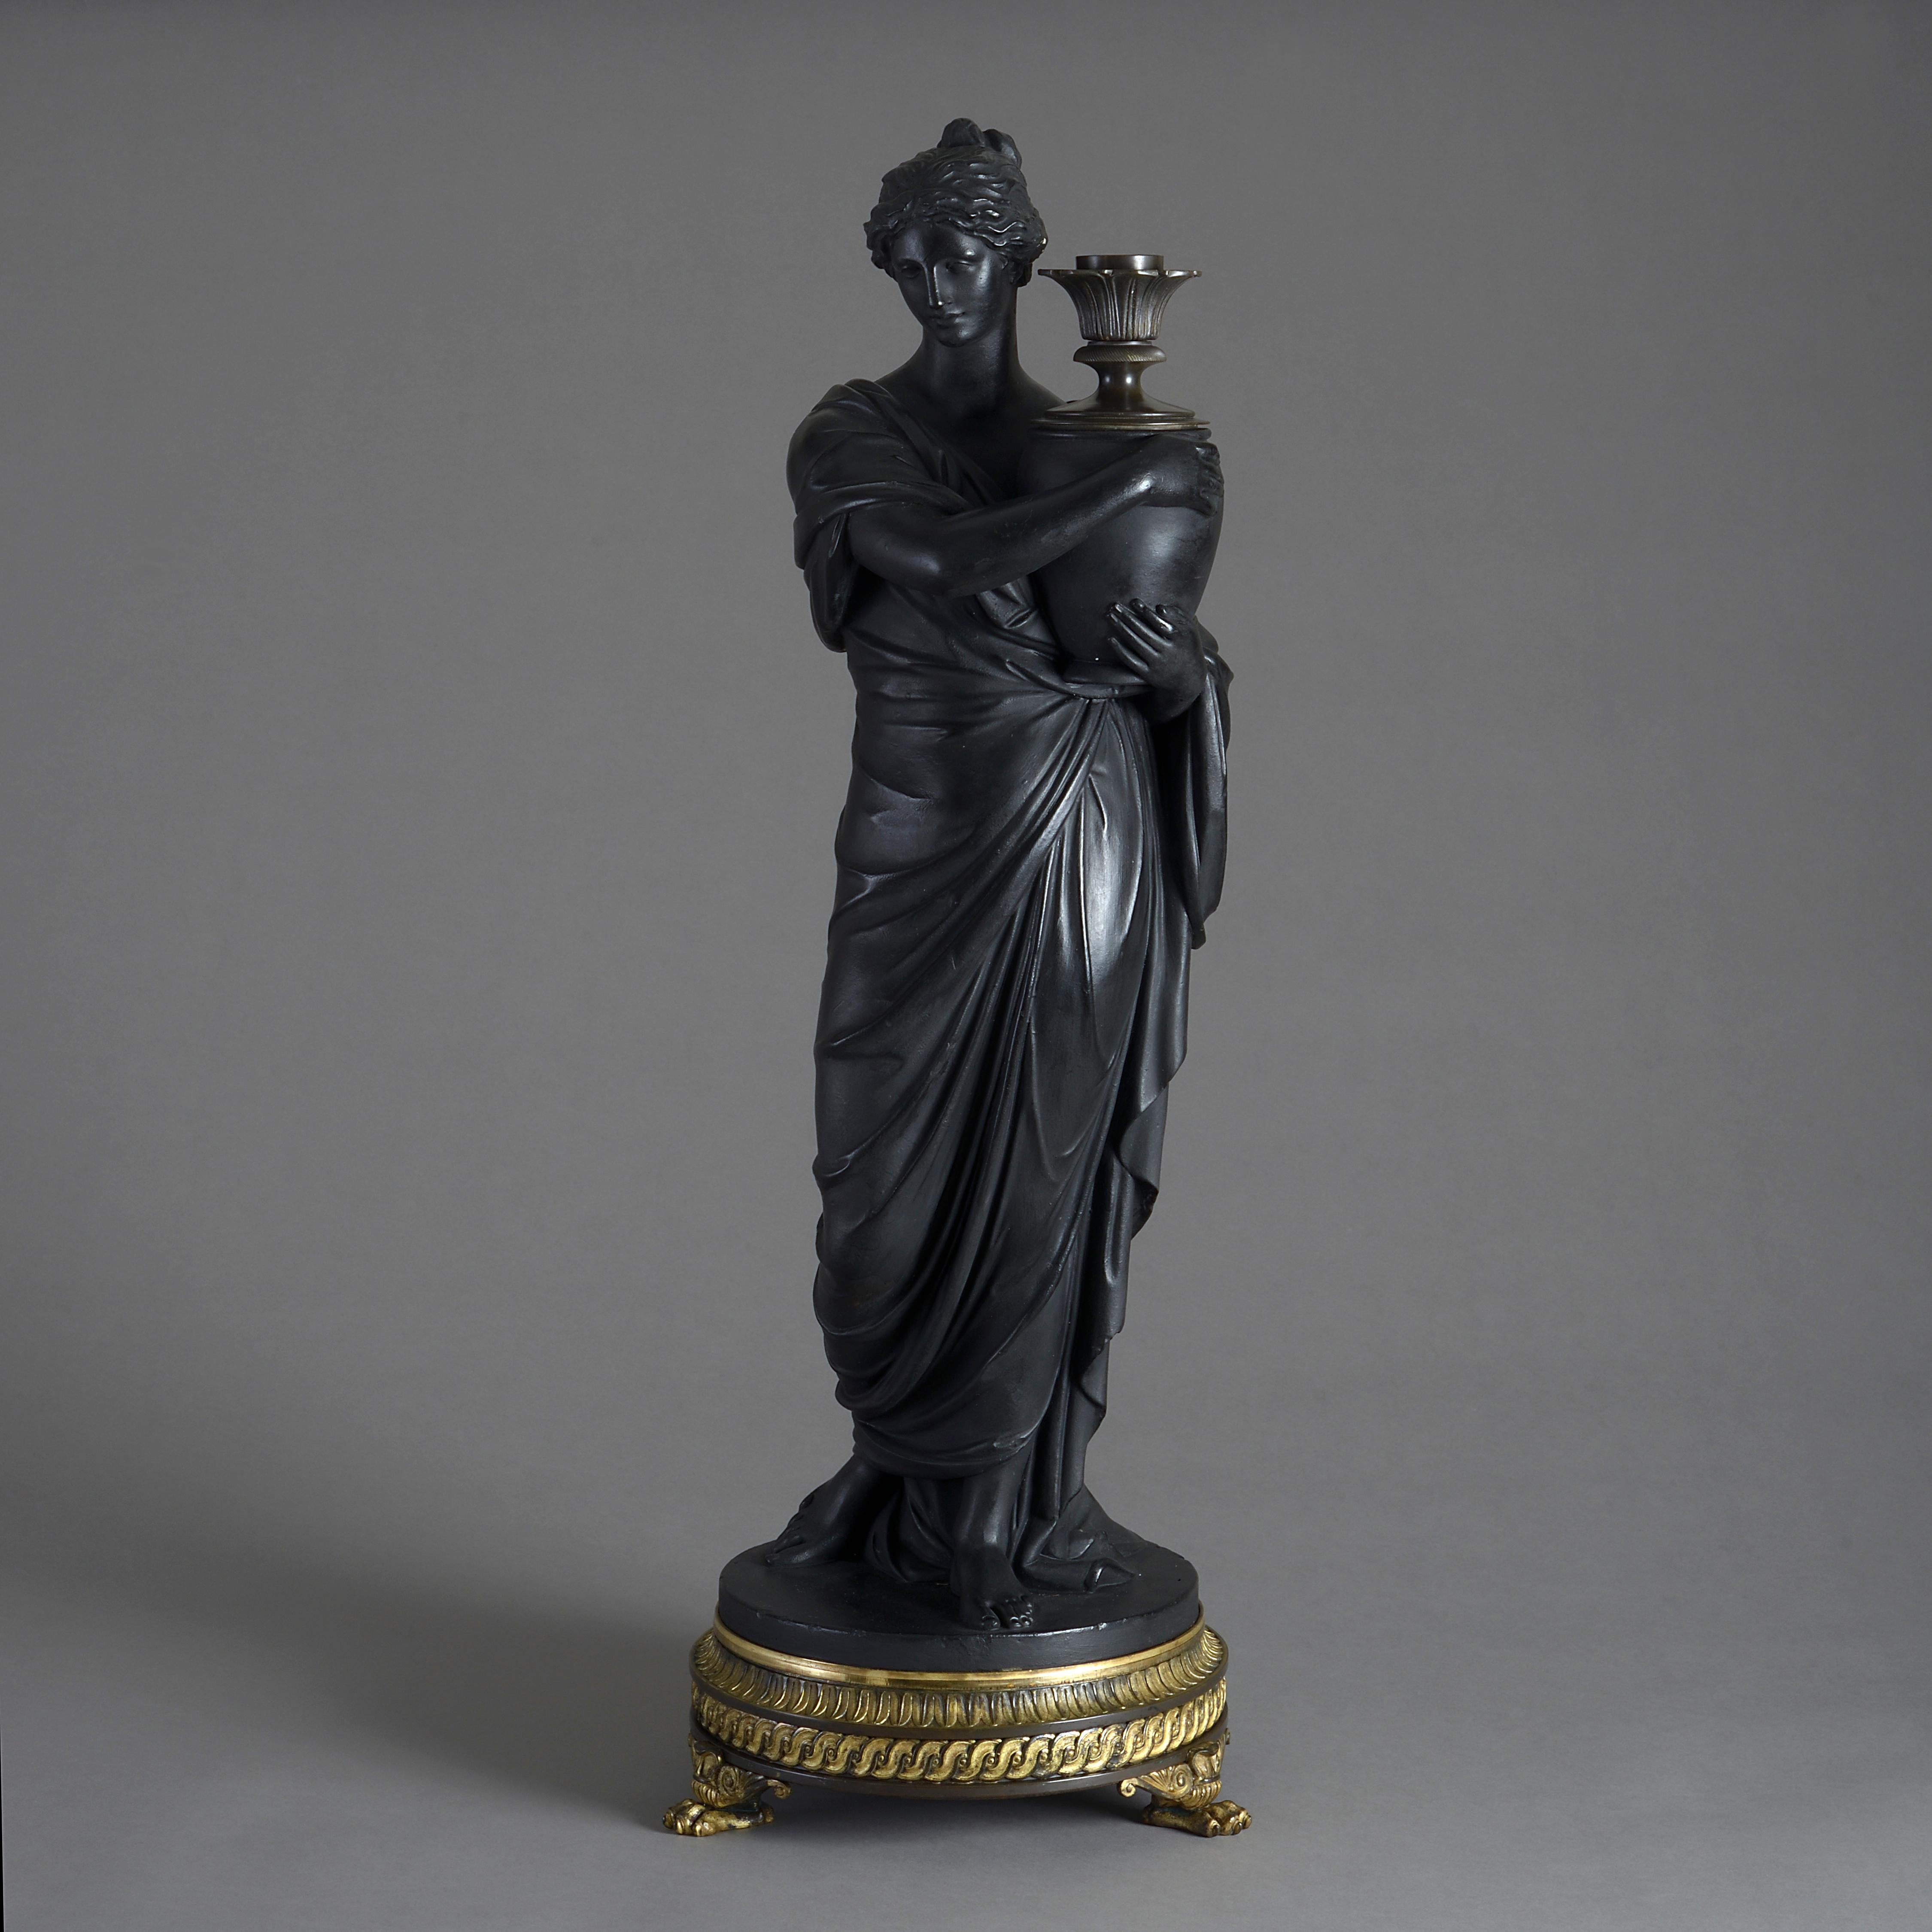 Belle figure de régence en plâtre bronzé représentant une vestale portant une lampe par Thomas Hopper, vers 1807.

Signé H. HOPPER LONDRES LE 6 JUILLET 1807.

Avec sa douille d'origine en bronze et sa base en bronze fin et bronze doré avec des